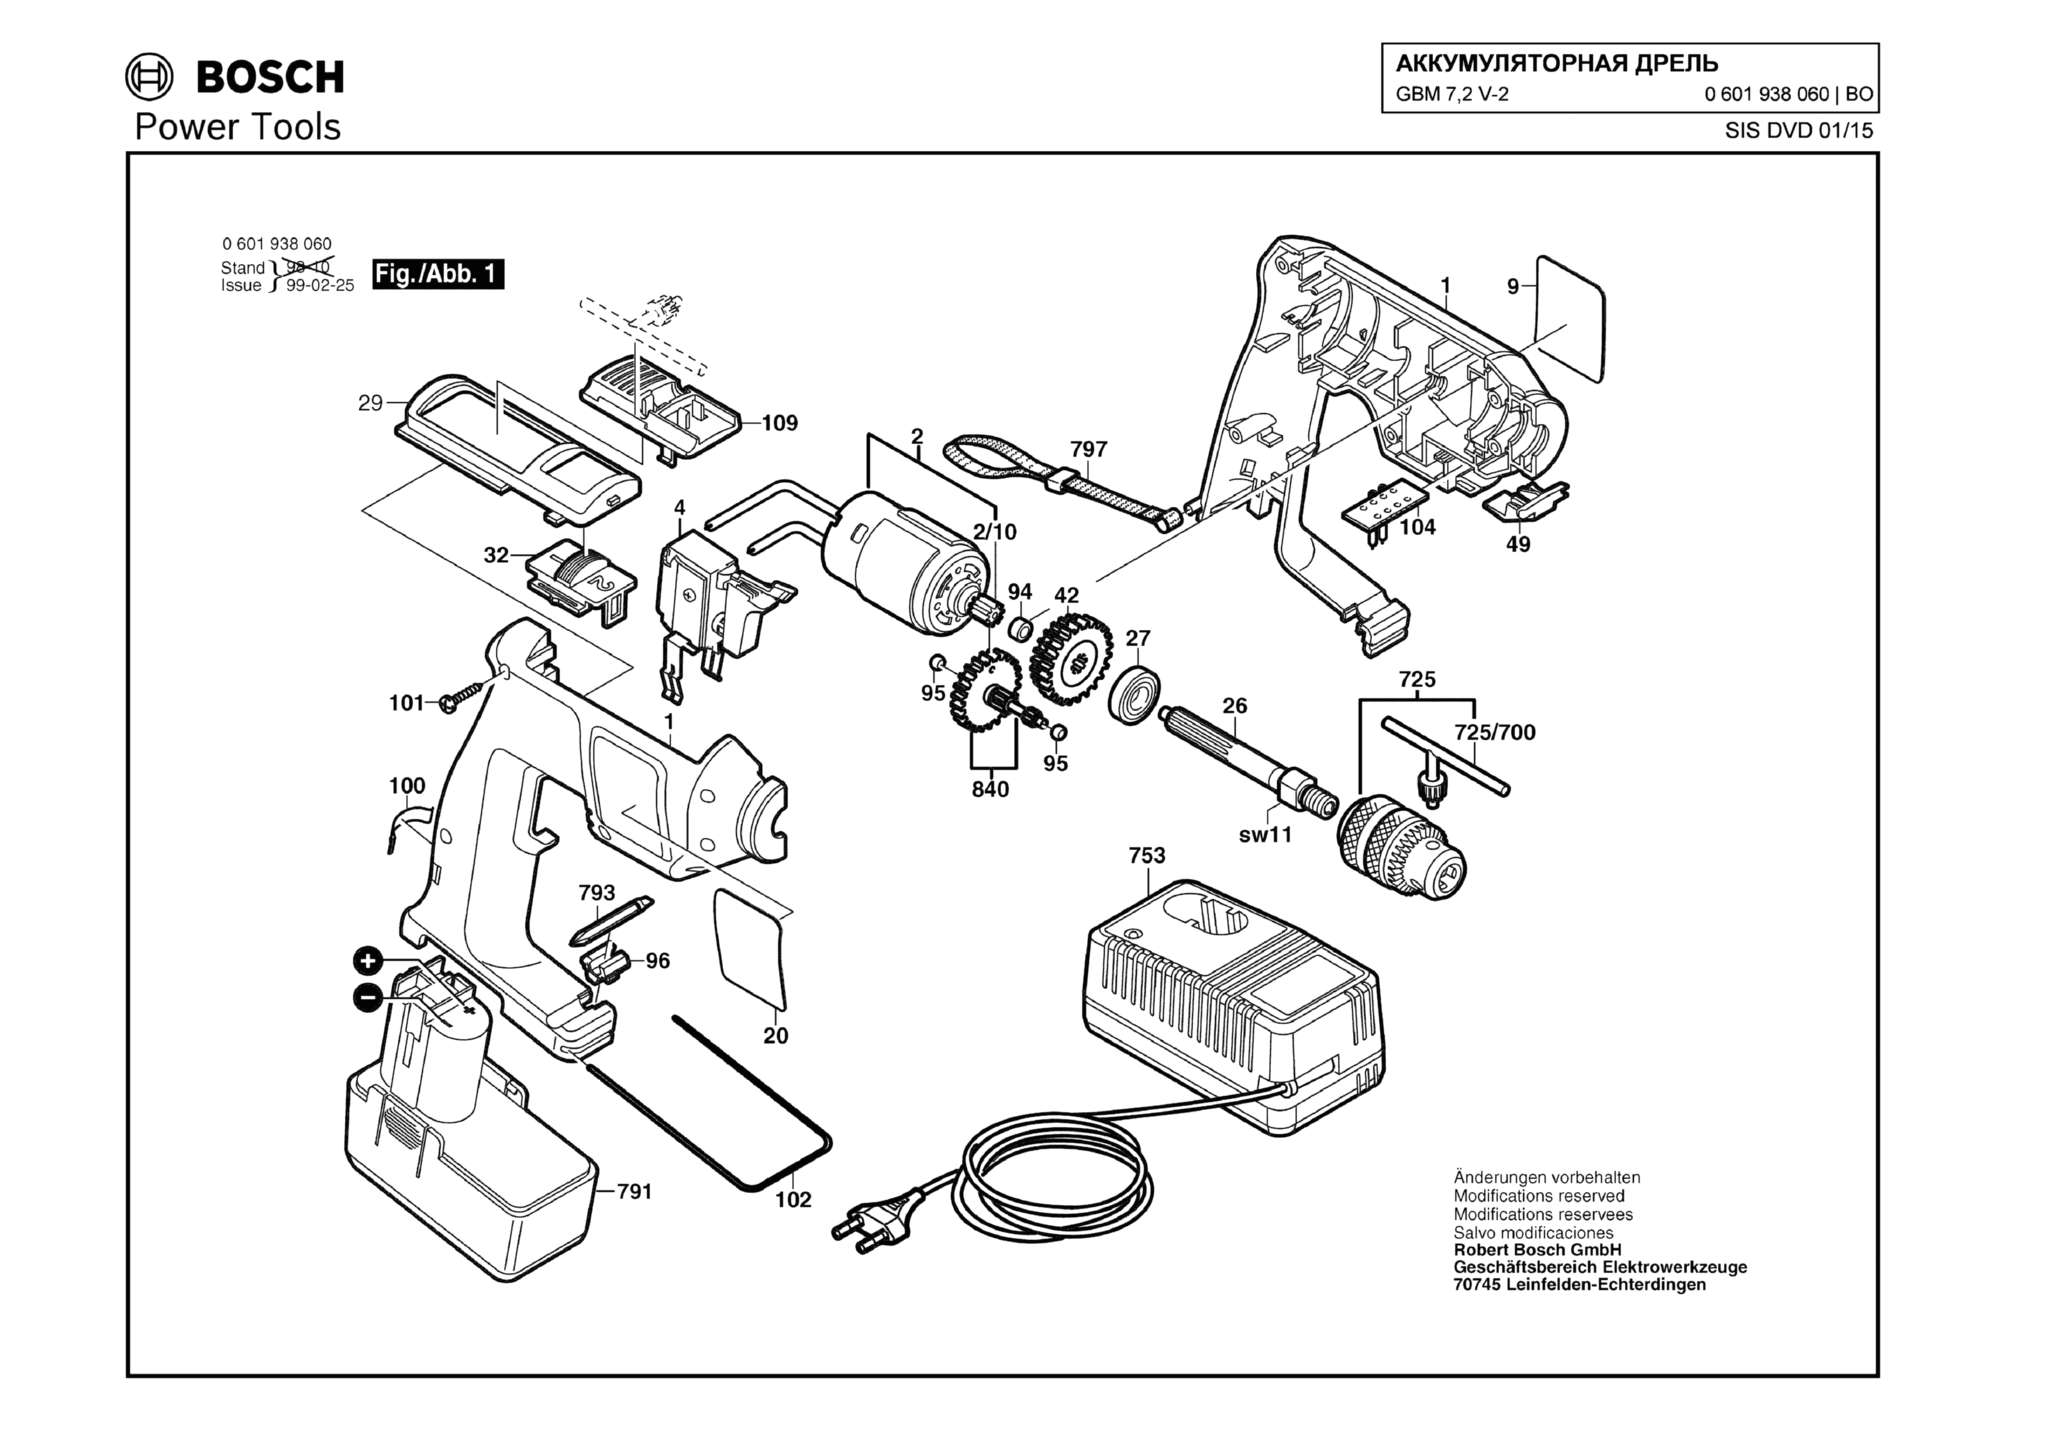 Запчасти, схема и деталировка Bosch GBM 7,2 V-2 (ТИП 0601938060)